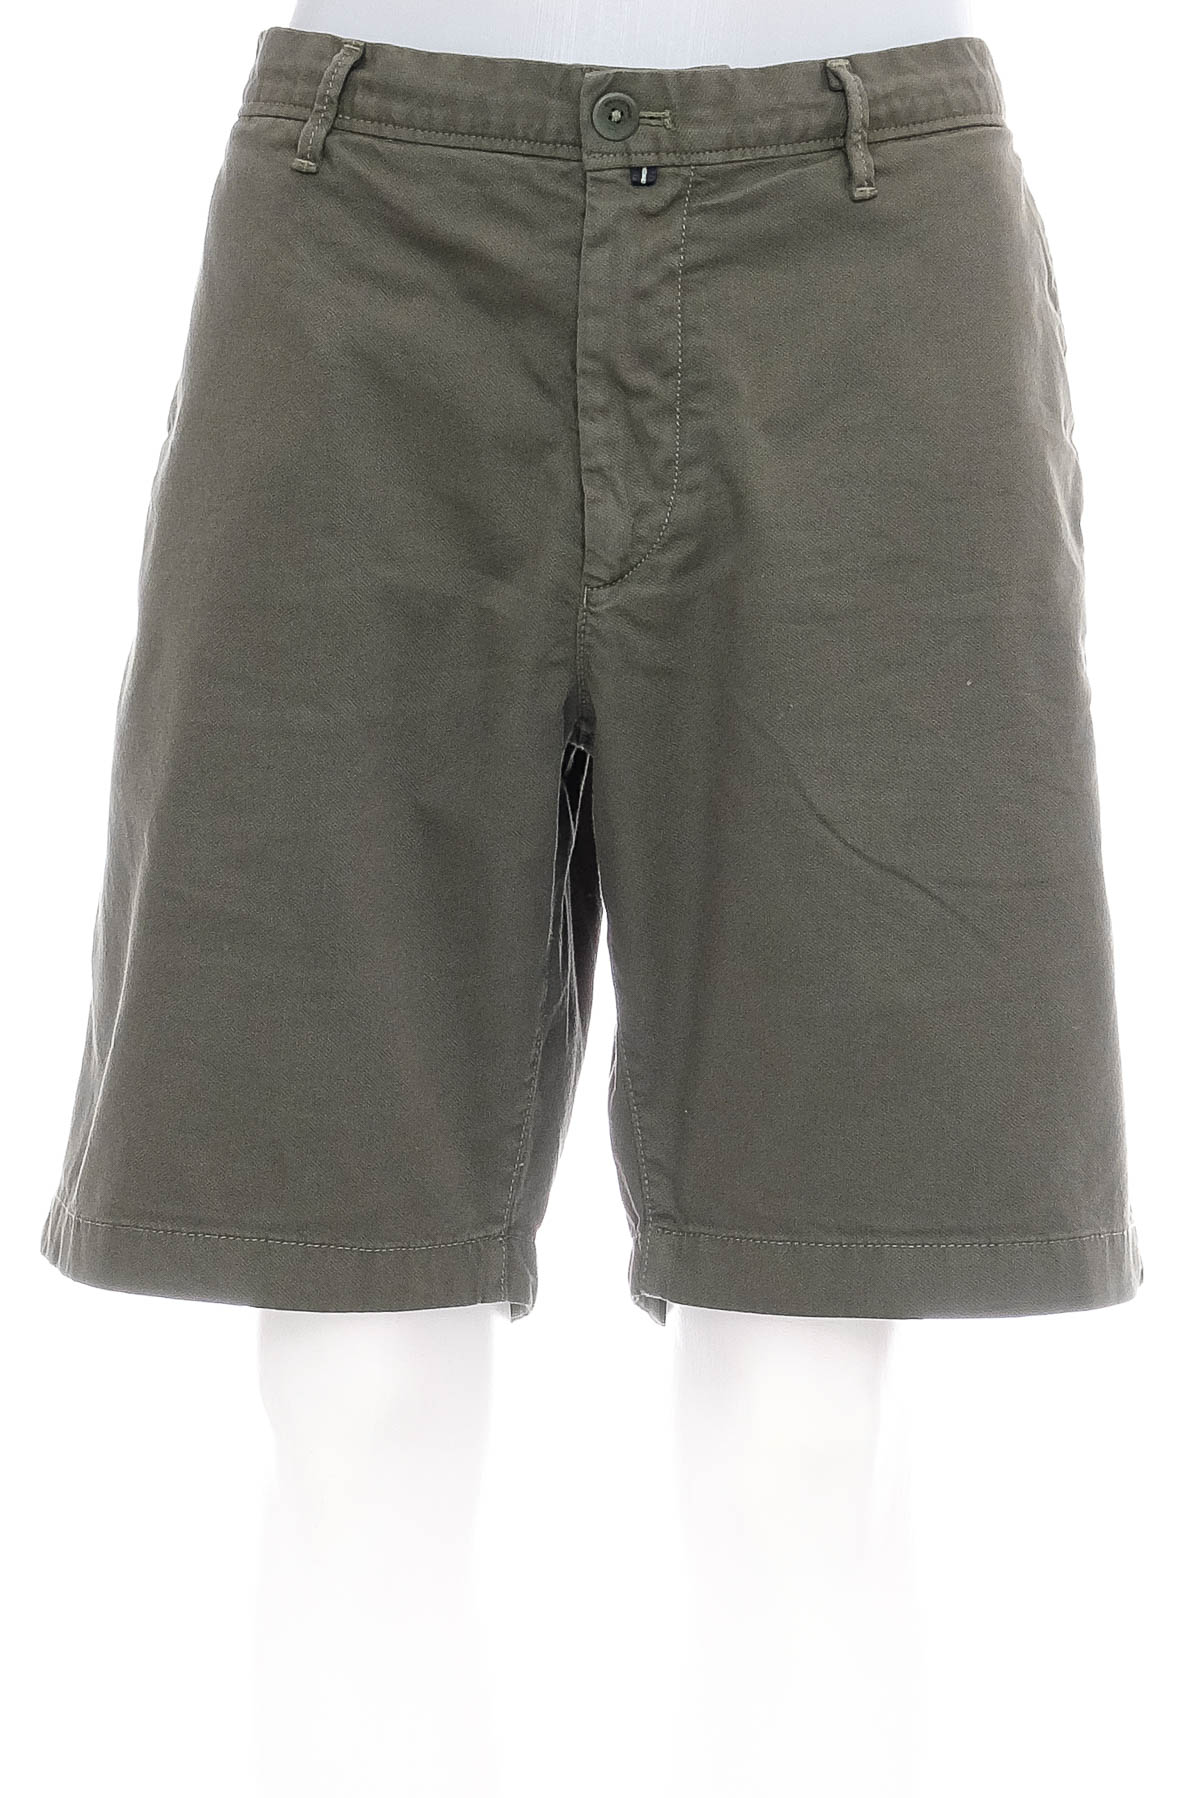 Men's shorts - Marc O' Polo - 0